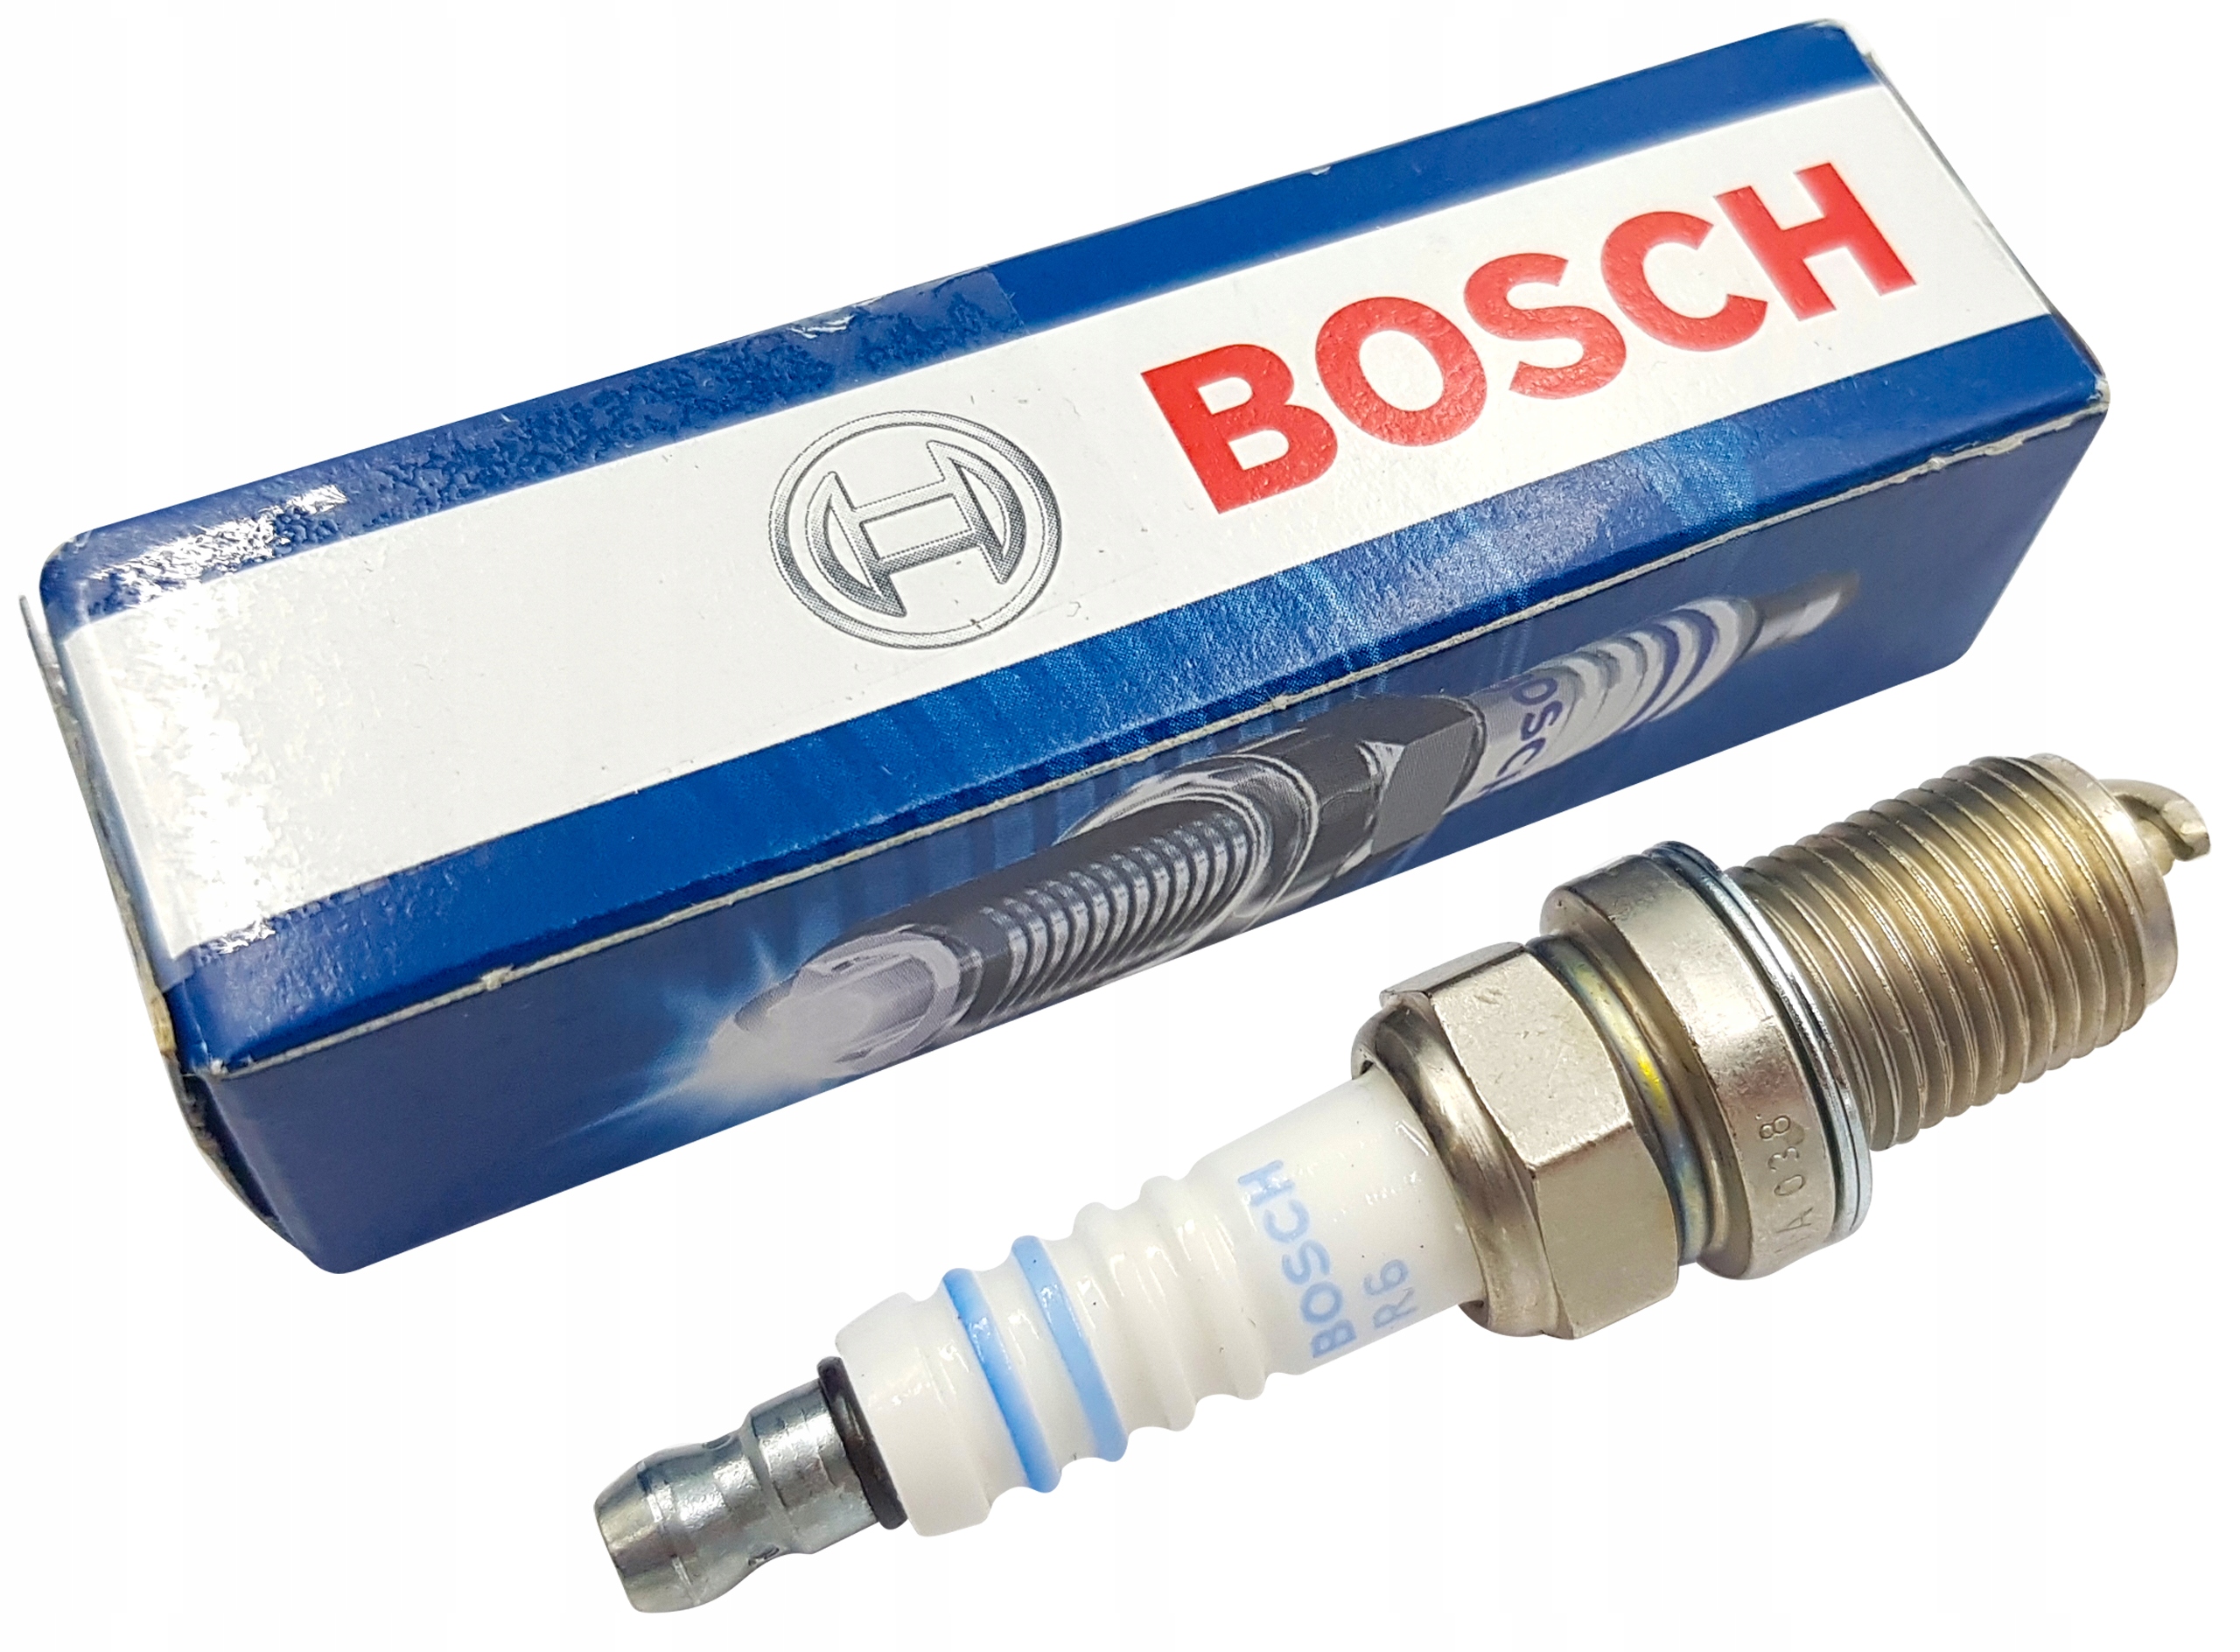 Купить свеча пассат. 0242240593 Bosch. Bosch свечи зажигания fr6mpp332. Bosch 0 242 240 593. Свеча накаливания Bosch 0250203004.